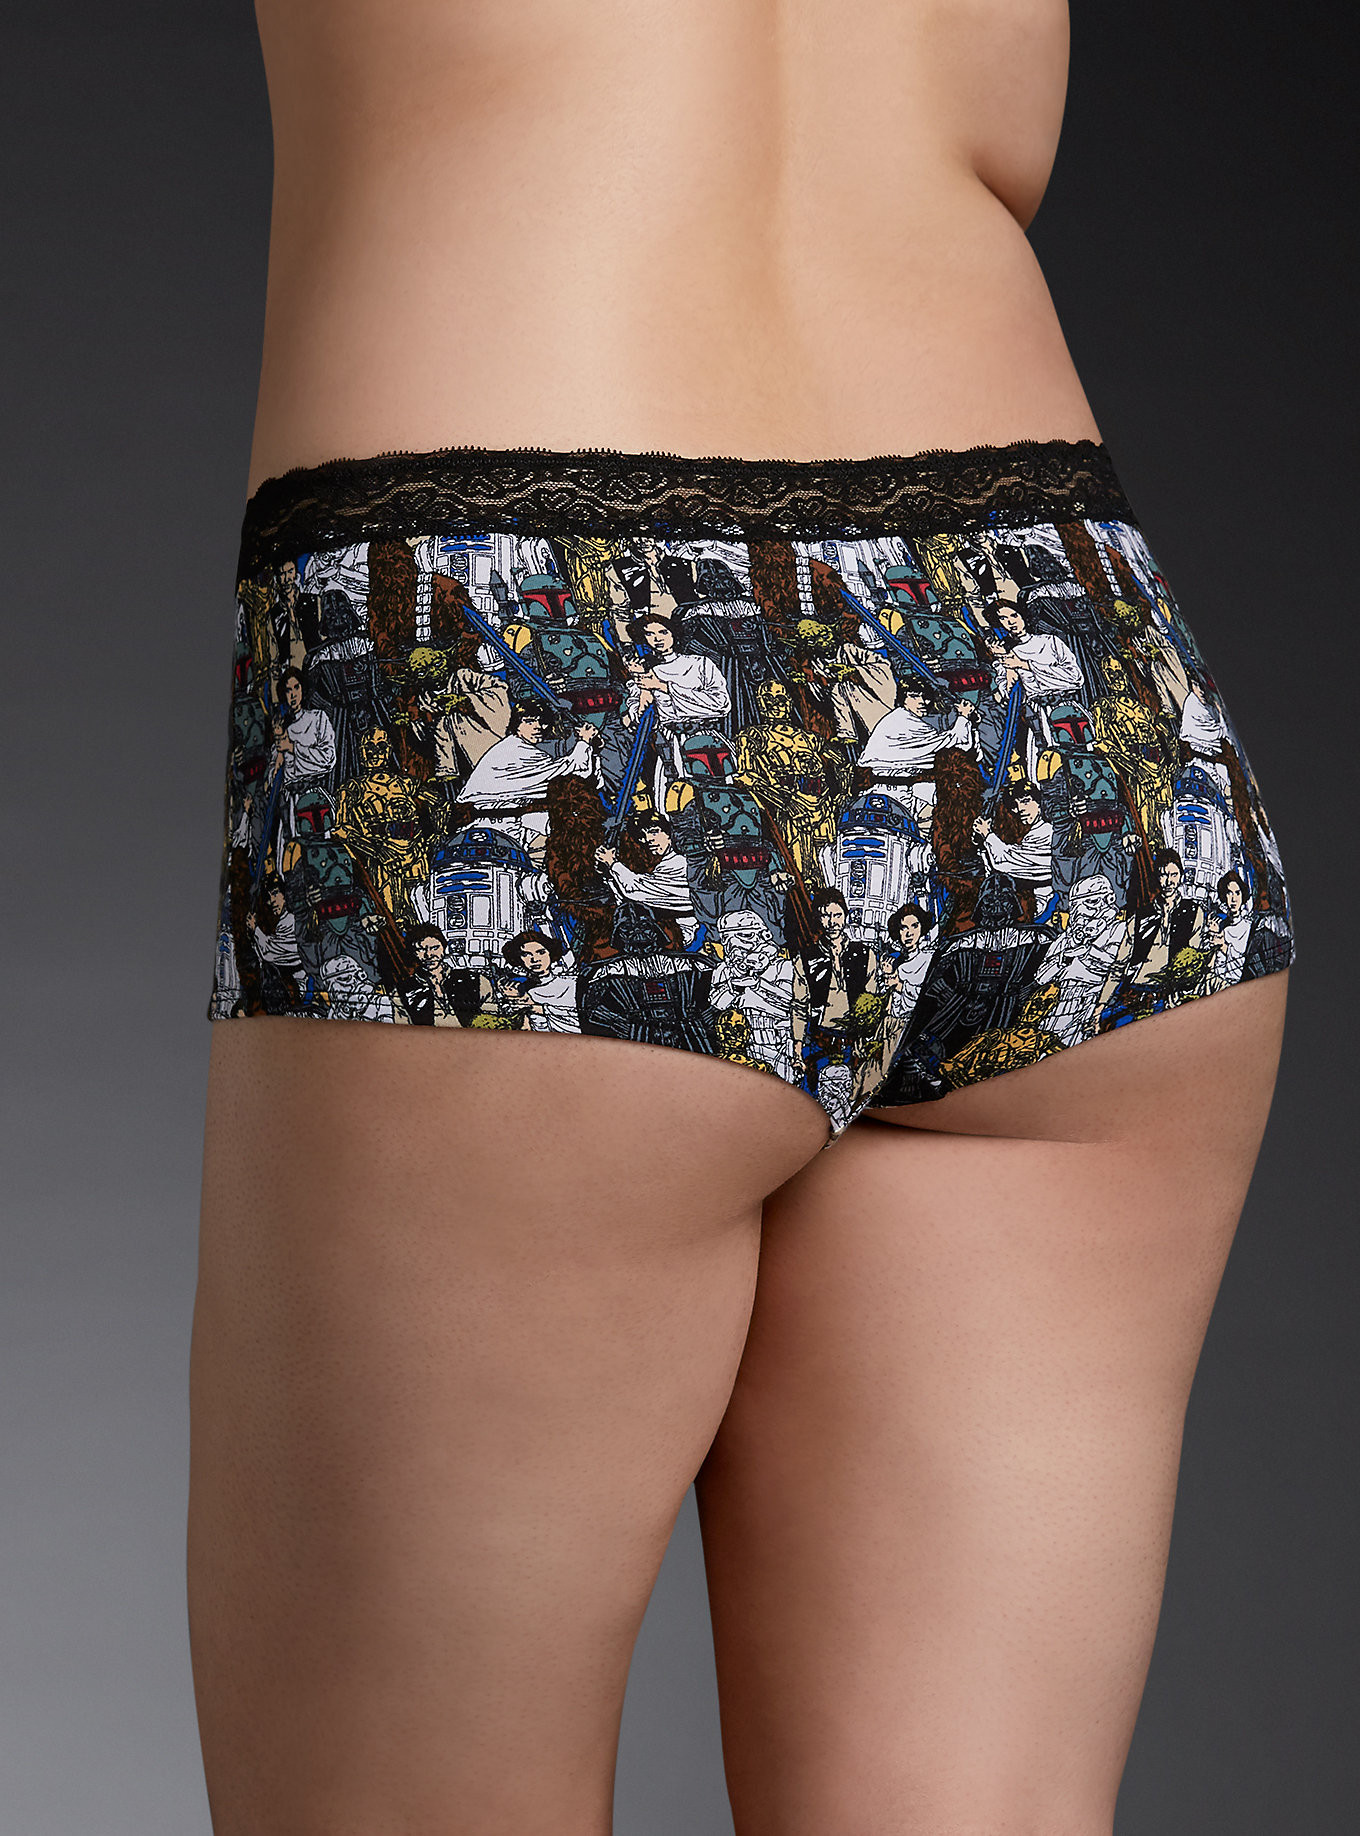 Elevator Storm Allover Print Thong Underwear Star Wars